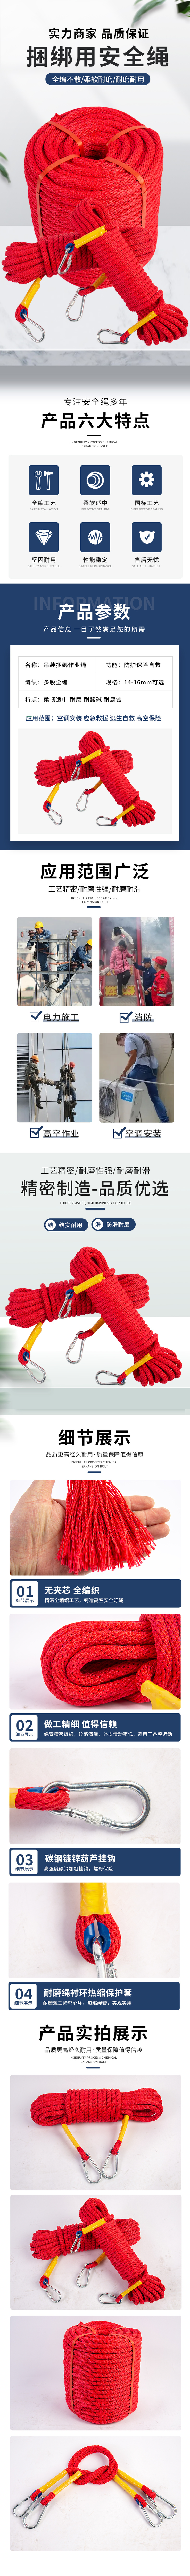 淘宝美工y225998捆绑安全绳设计作品